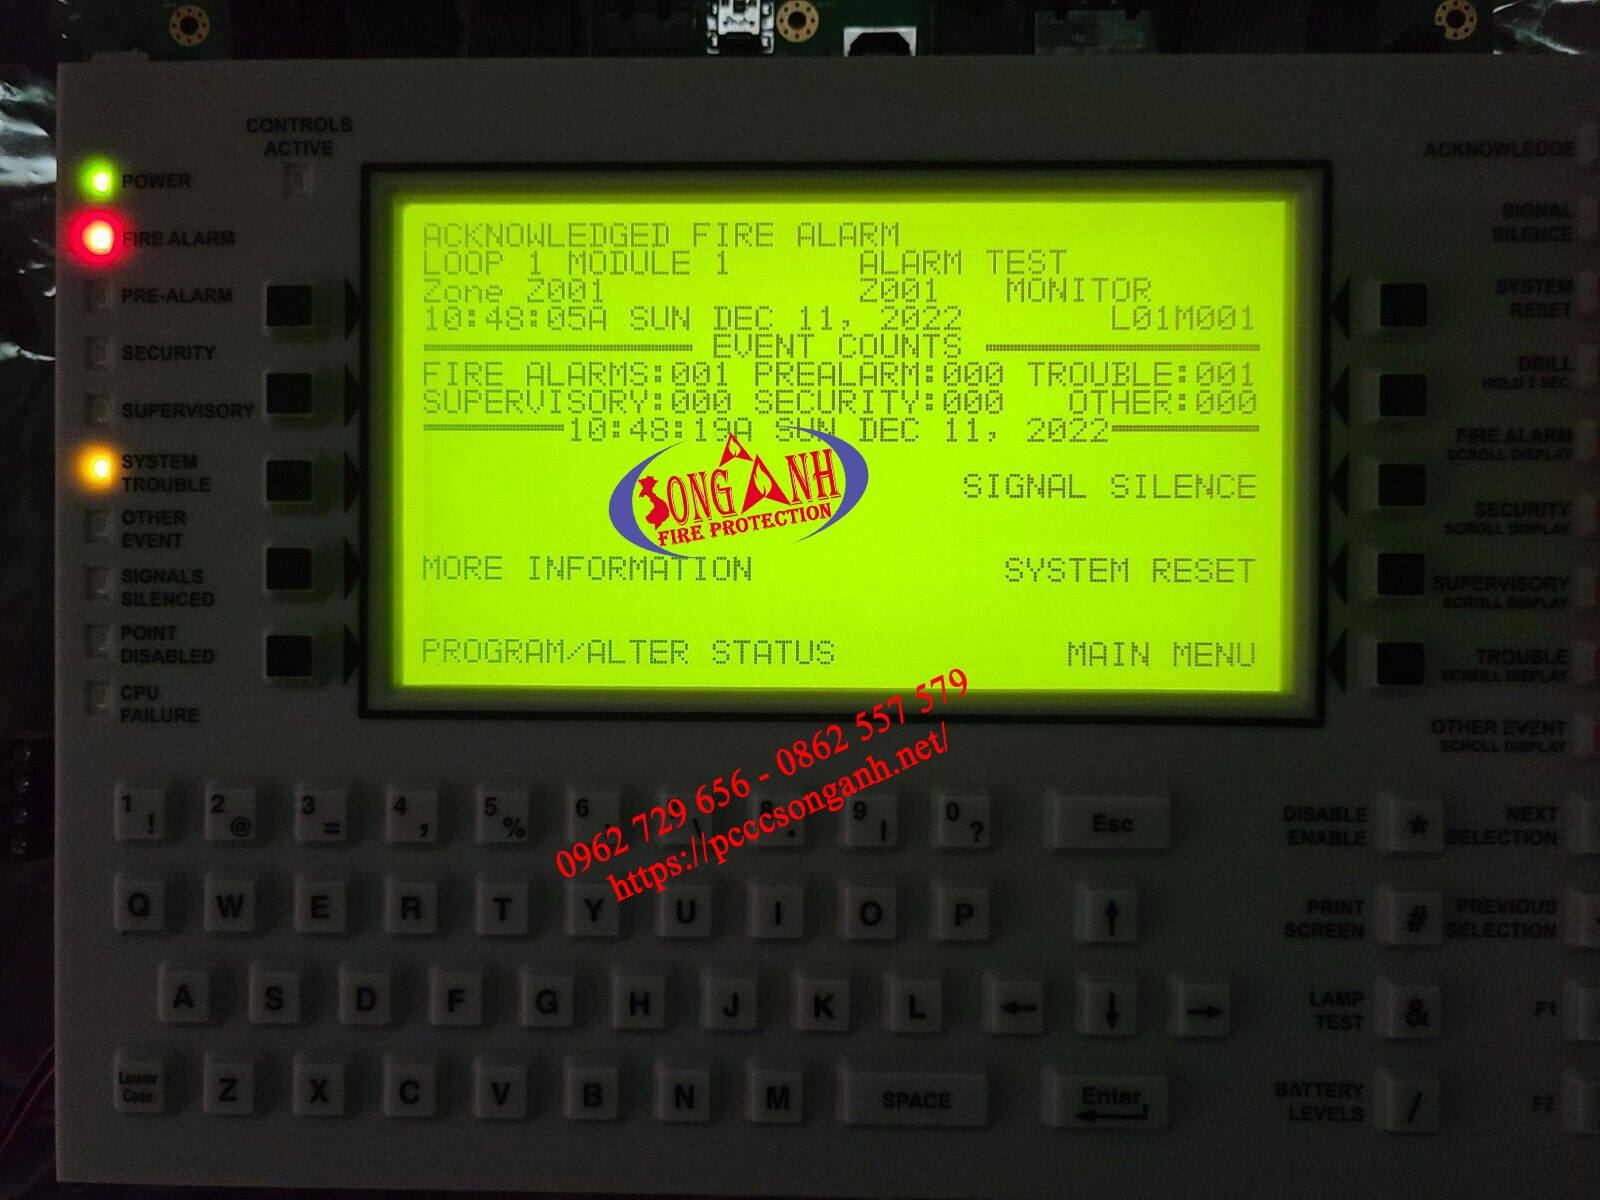 trung tâm xử lý tín hiệu báo cháy CPU2-3030D